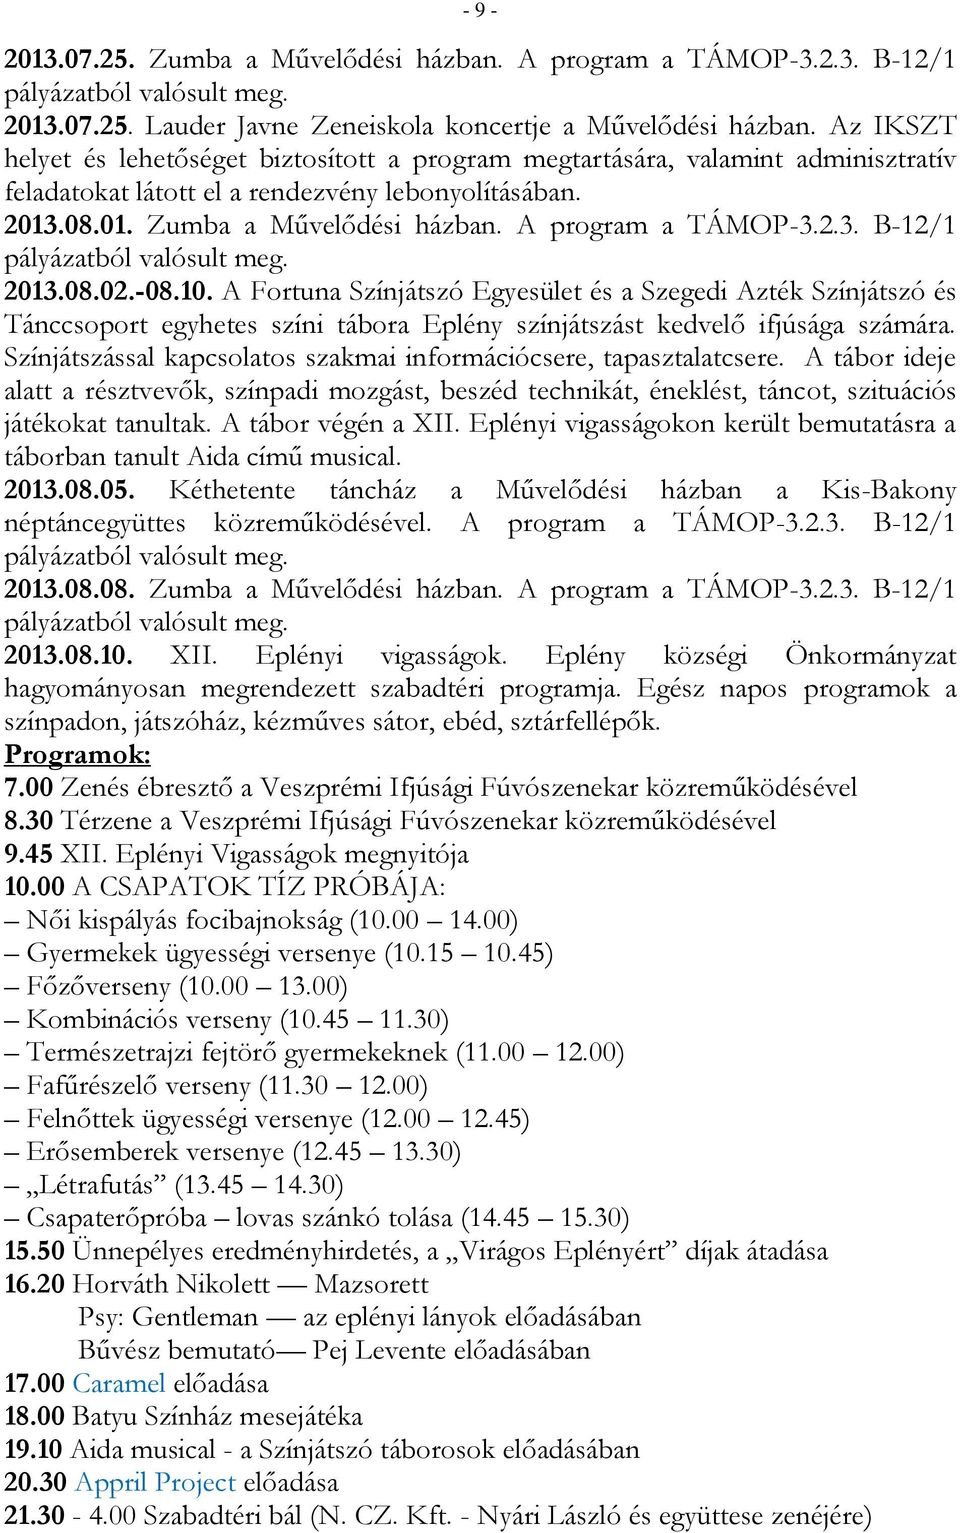 A program a TÁMOP-3.2.3. B-12/1 2013.08.02.-08.10. A Fortuna Színjátszó Egyesület és a Szegedi Azték Színjátszó és Tánccsoport egyhetes színi tábora Eplény színjátszást kedvelő ifjúsága számára.